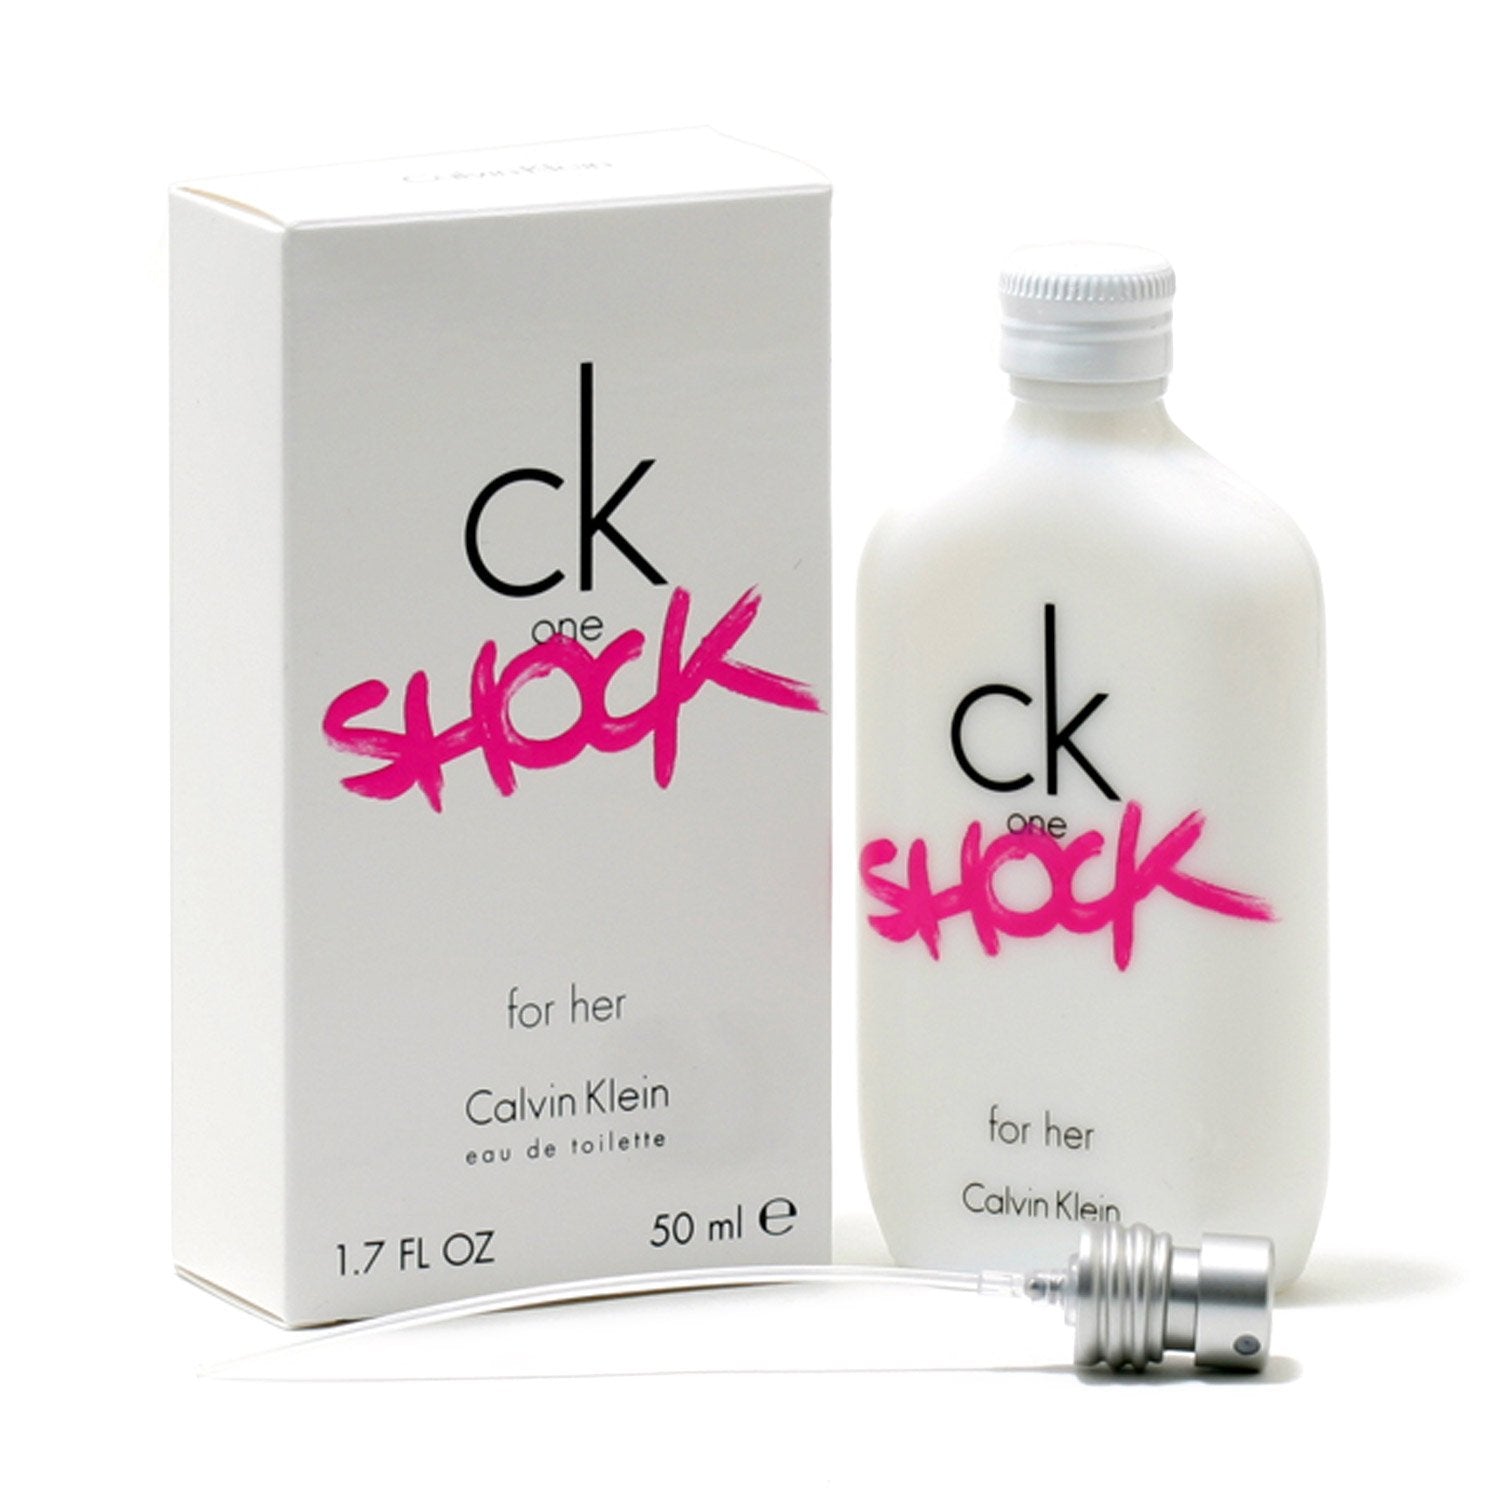 SHOCK SPRAY - KLEIN DE Room BY – TOILETTE FOR Fragrance EAU CK WOMEN ONE CALVIN